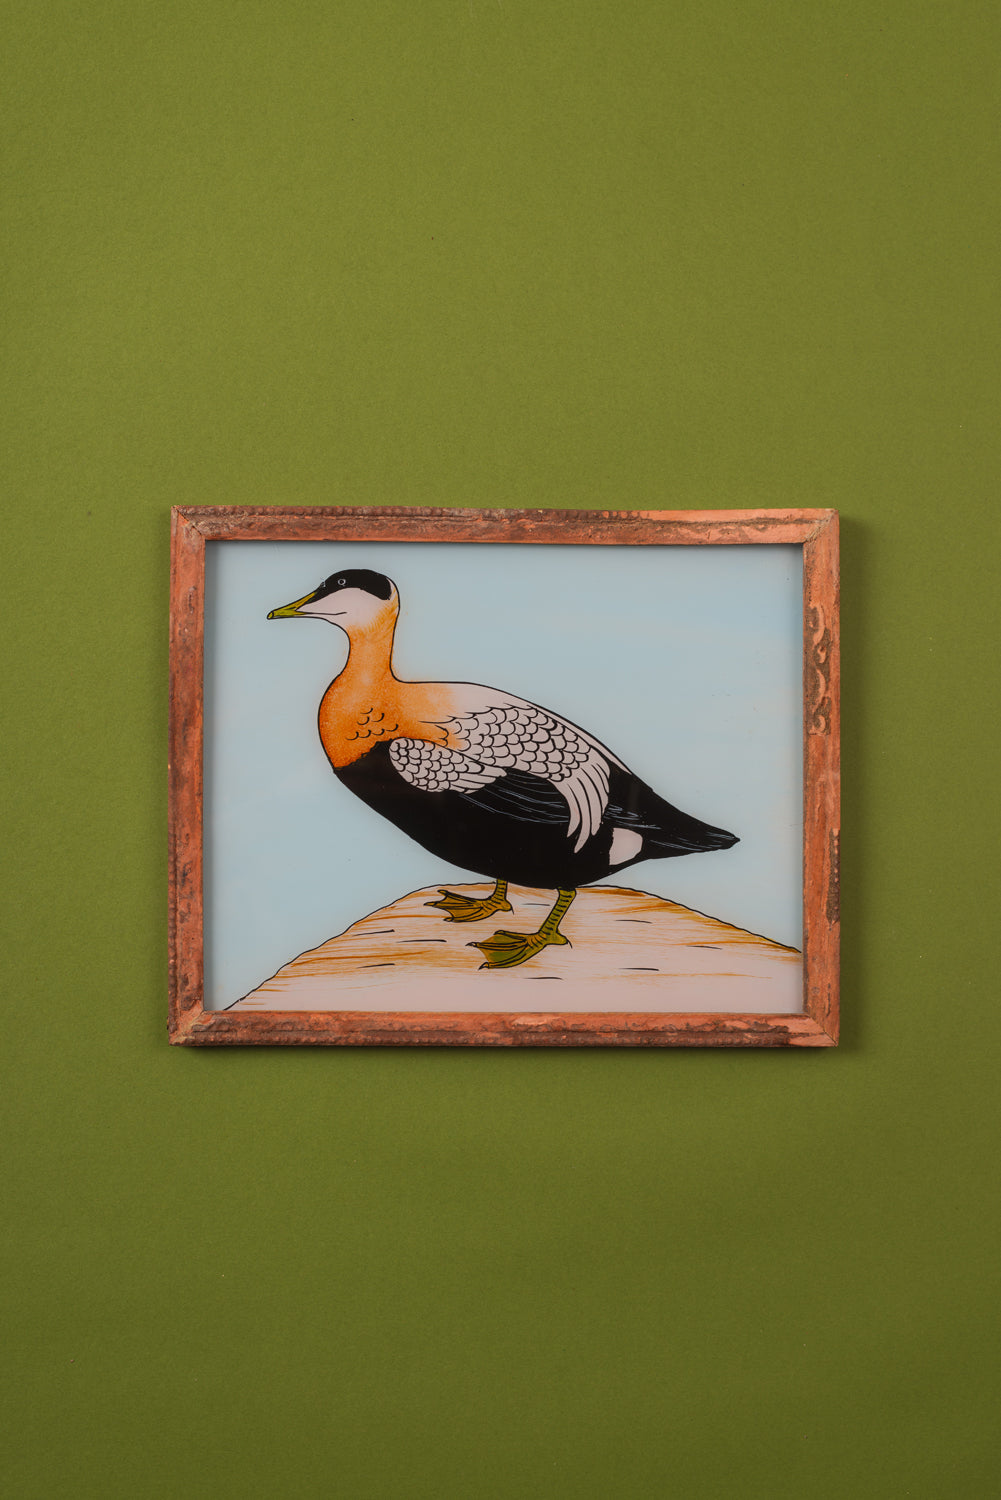 Medium Old Wood Frame with Botanical/Wildlife Painting - 567